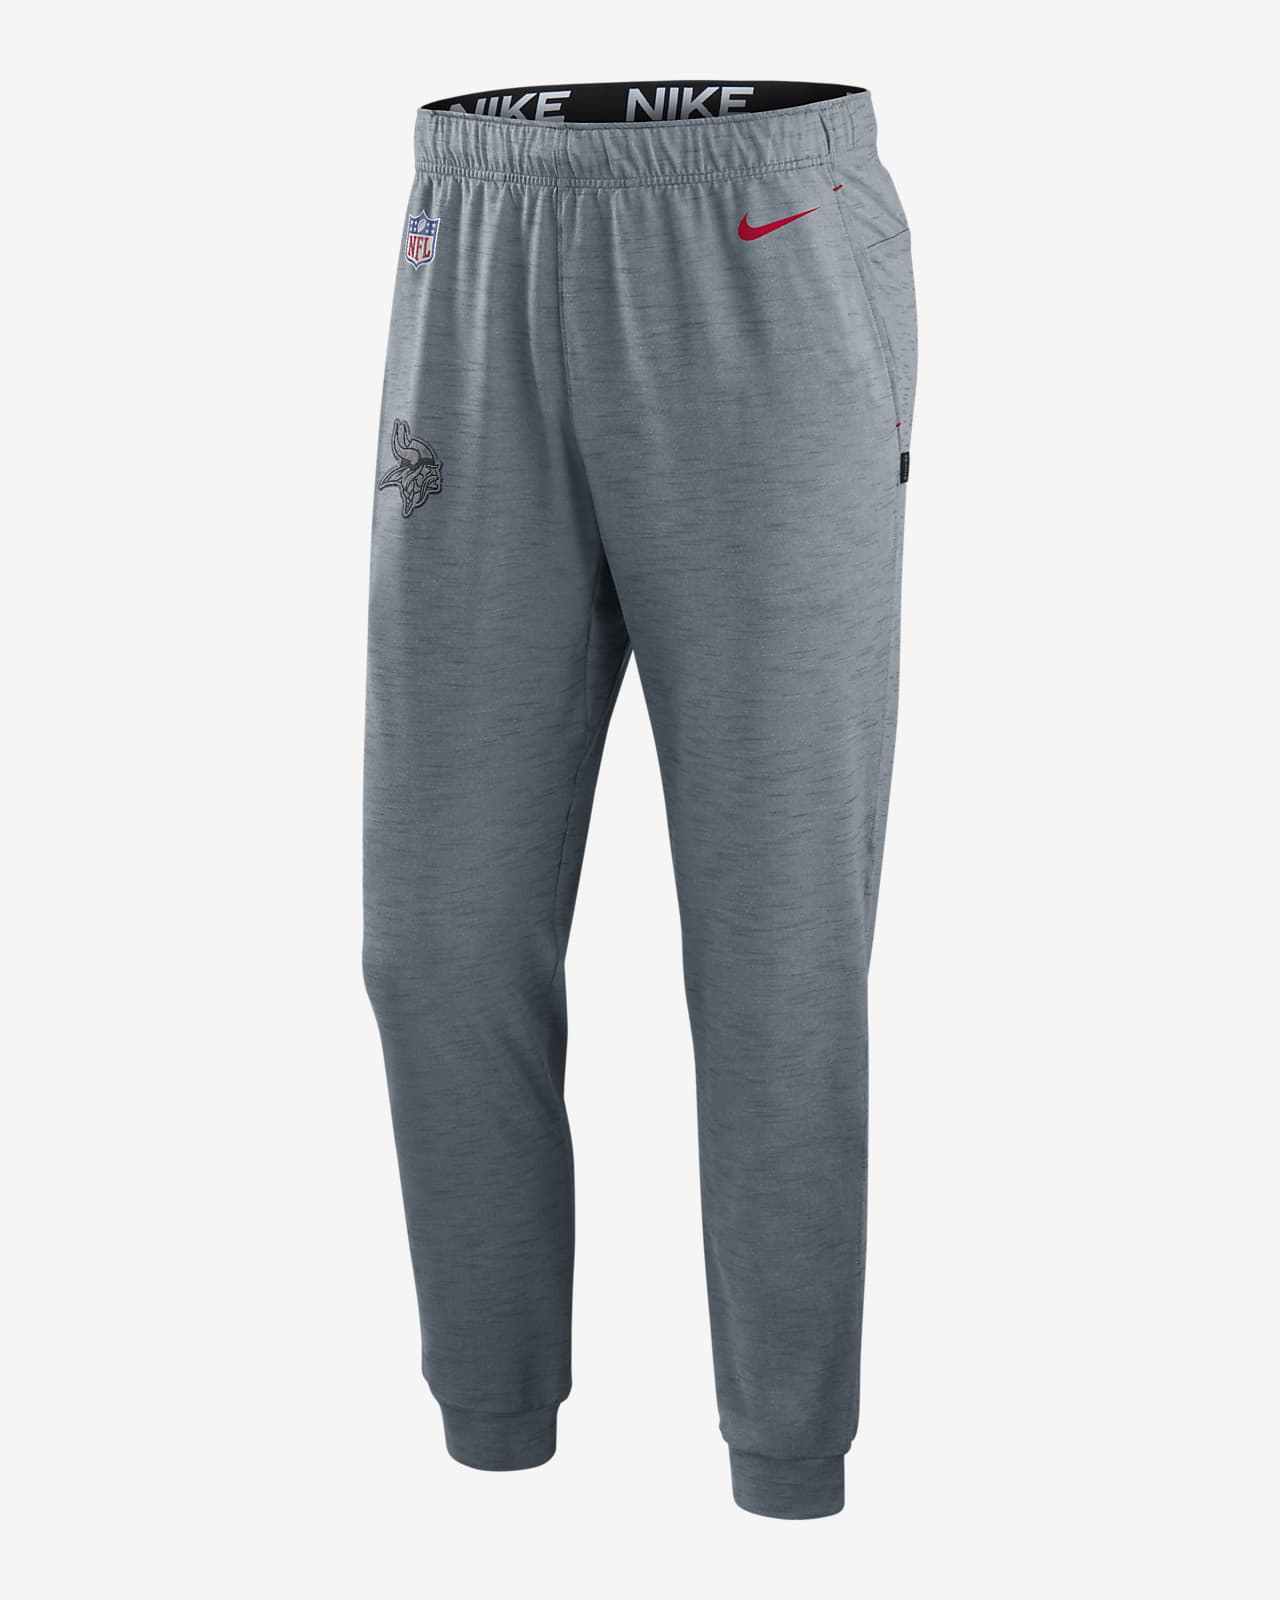 Nike Dri-FIT Player (NFL Minnesota Vikings) Men's Pants